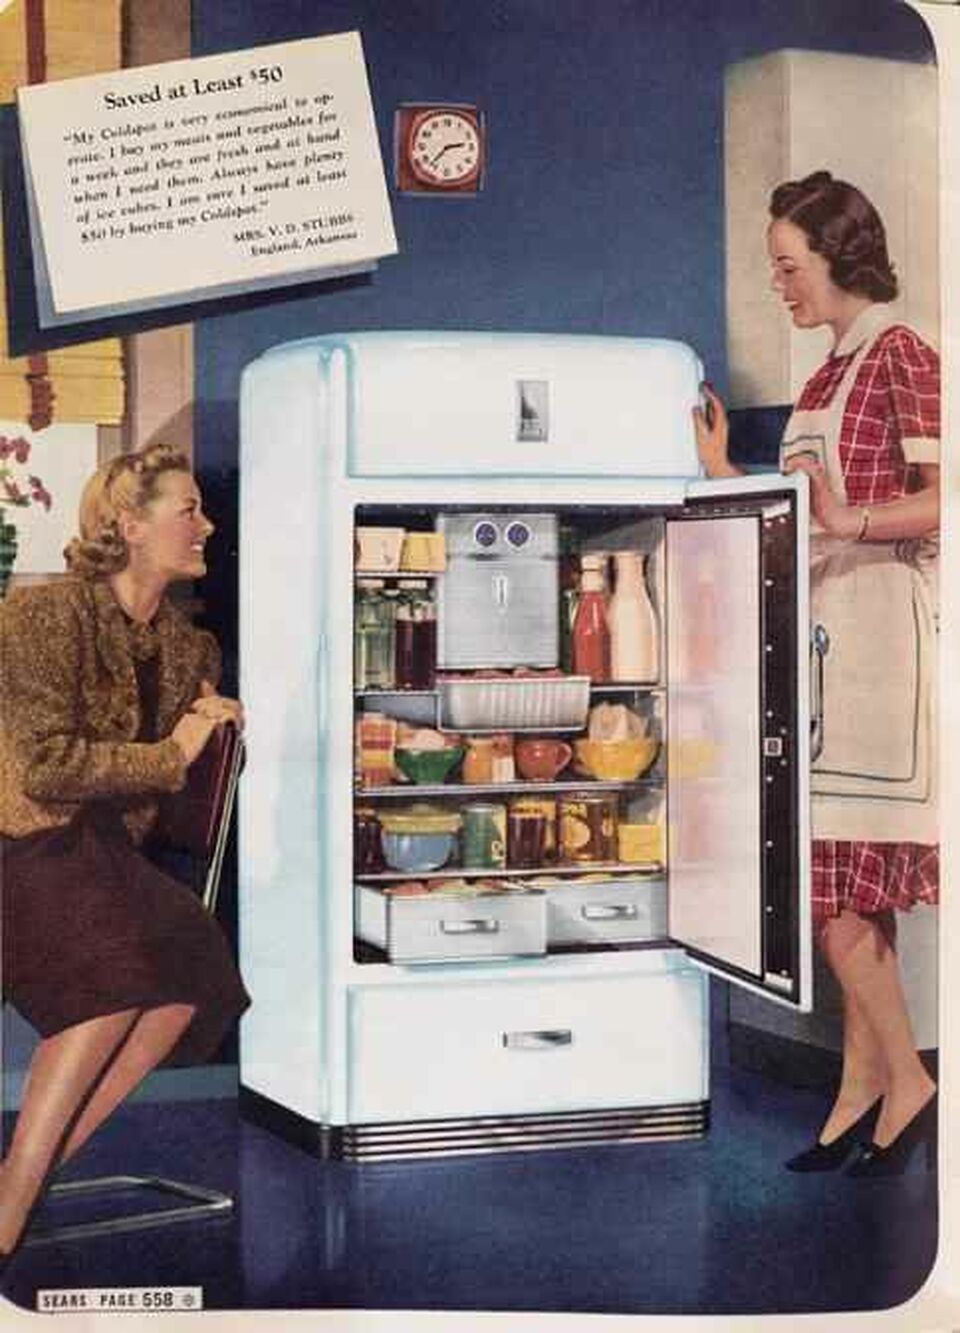 A Raymond Loewy által tervezett „Coldspot” Sears hűtőszekrény volt az egyik első termék, amit kifejezetten a vonzó formájával reklámoztak.